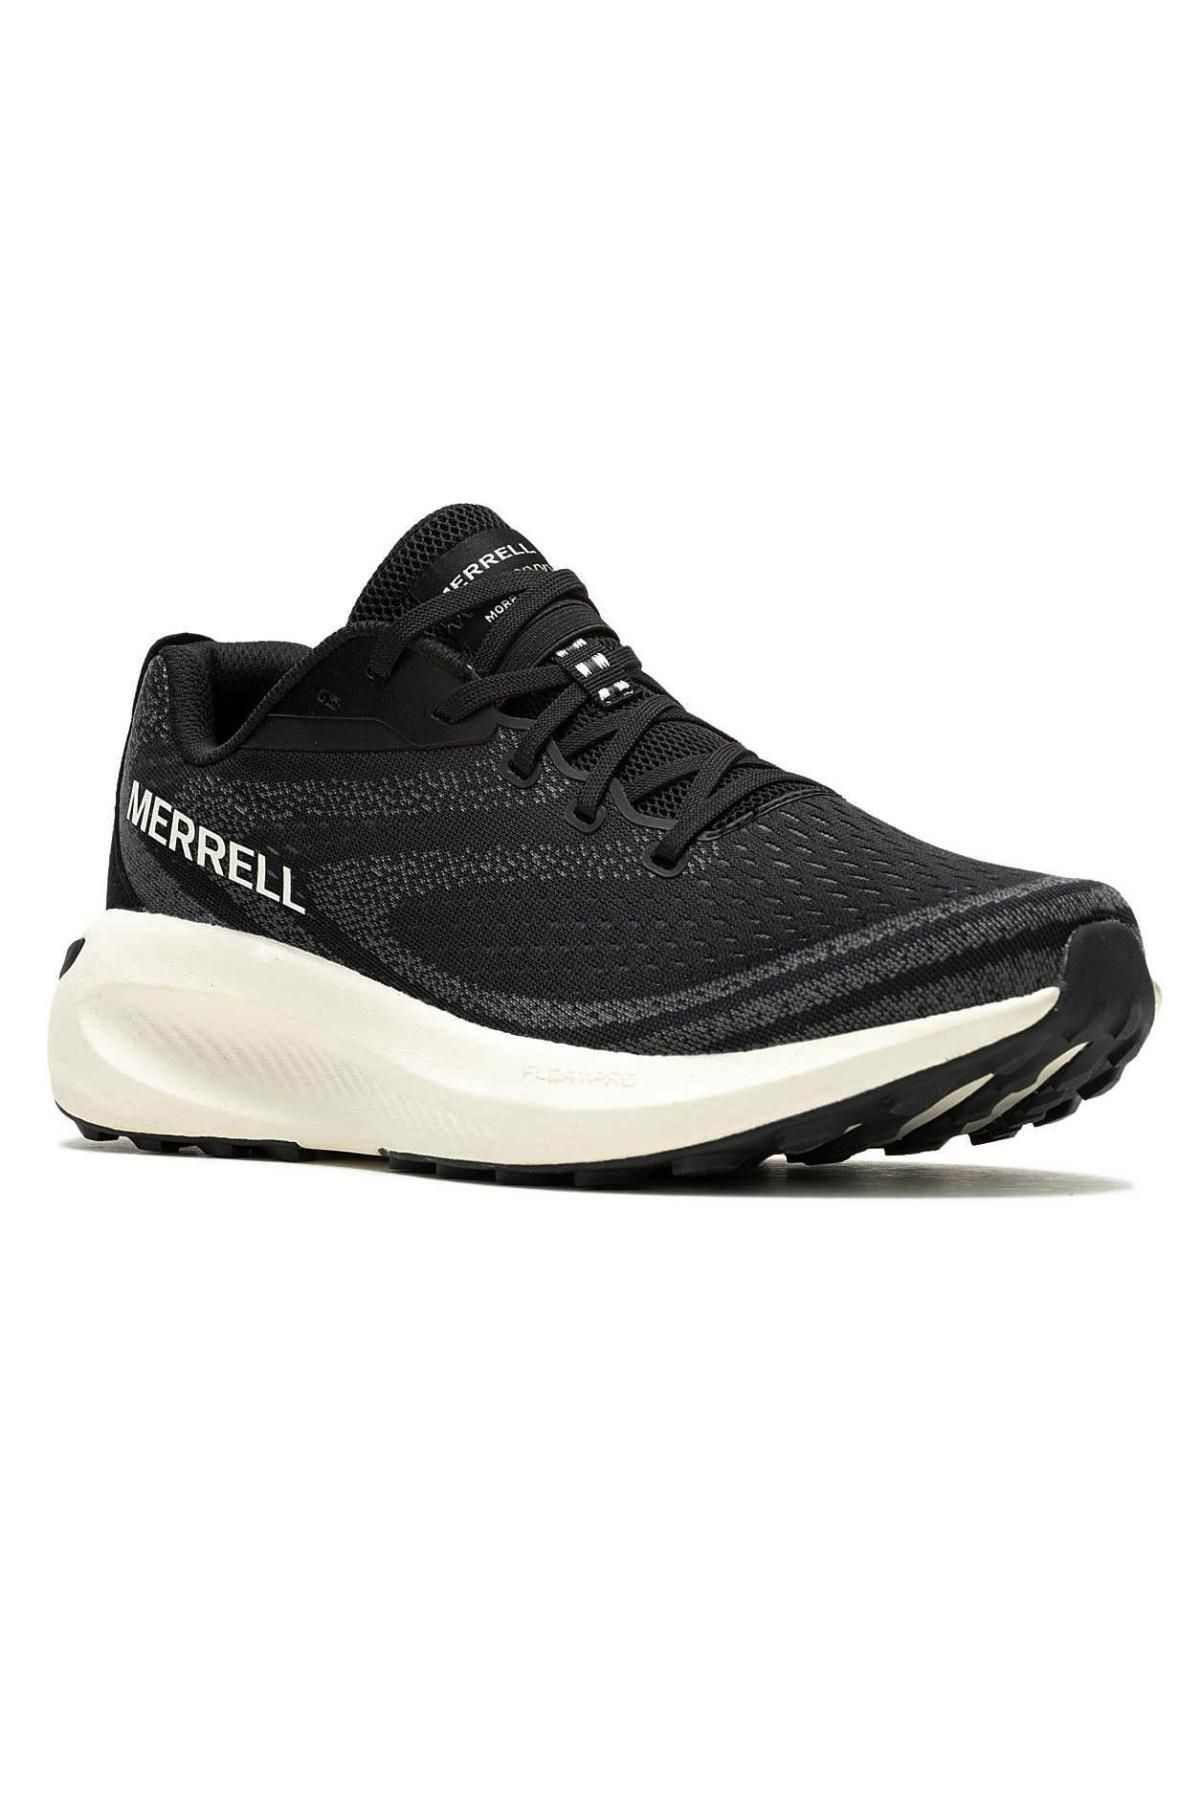 Merrell Merrel J068167 Morphlite Koşu Siyah Erkek Spor Ayakkabı